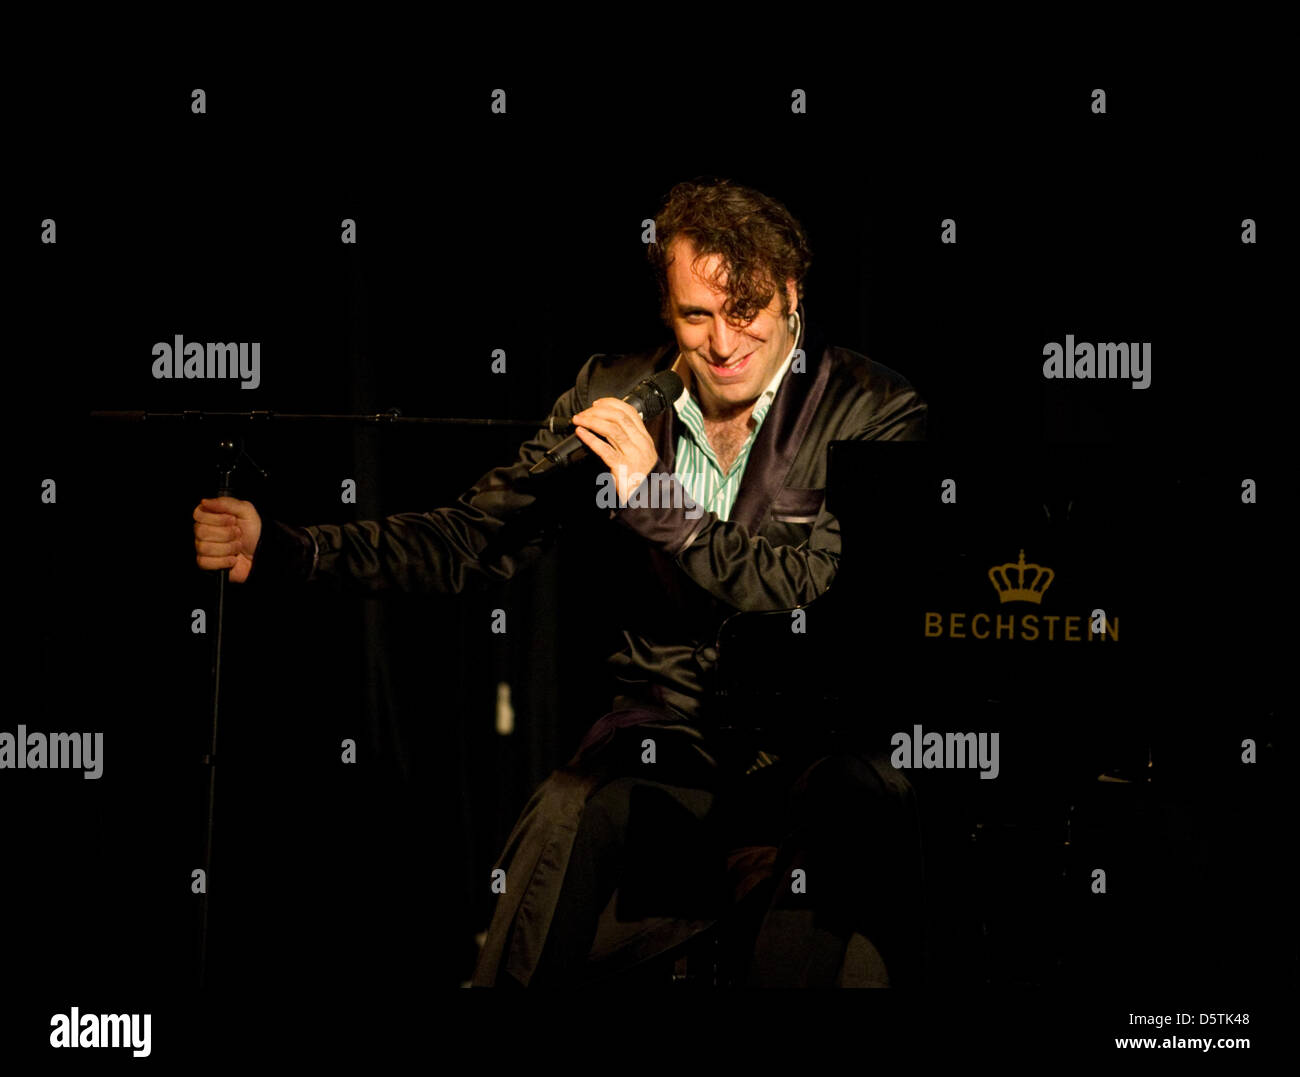 Pianista canadese freddoloso Gonzales esegue sul palco durante un concerto a Heimathafen a Berlino, 26 novembre 2012. Peperoncino Gonzales, nato Jason Charles Beck, è meglio conosciuto per il suo primo MC e electro album, ma egli è anche un pianista, produttore e cantautore. Foto: Alex Ehlers Foto Stock